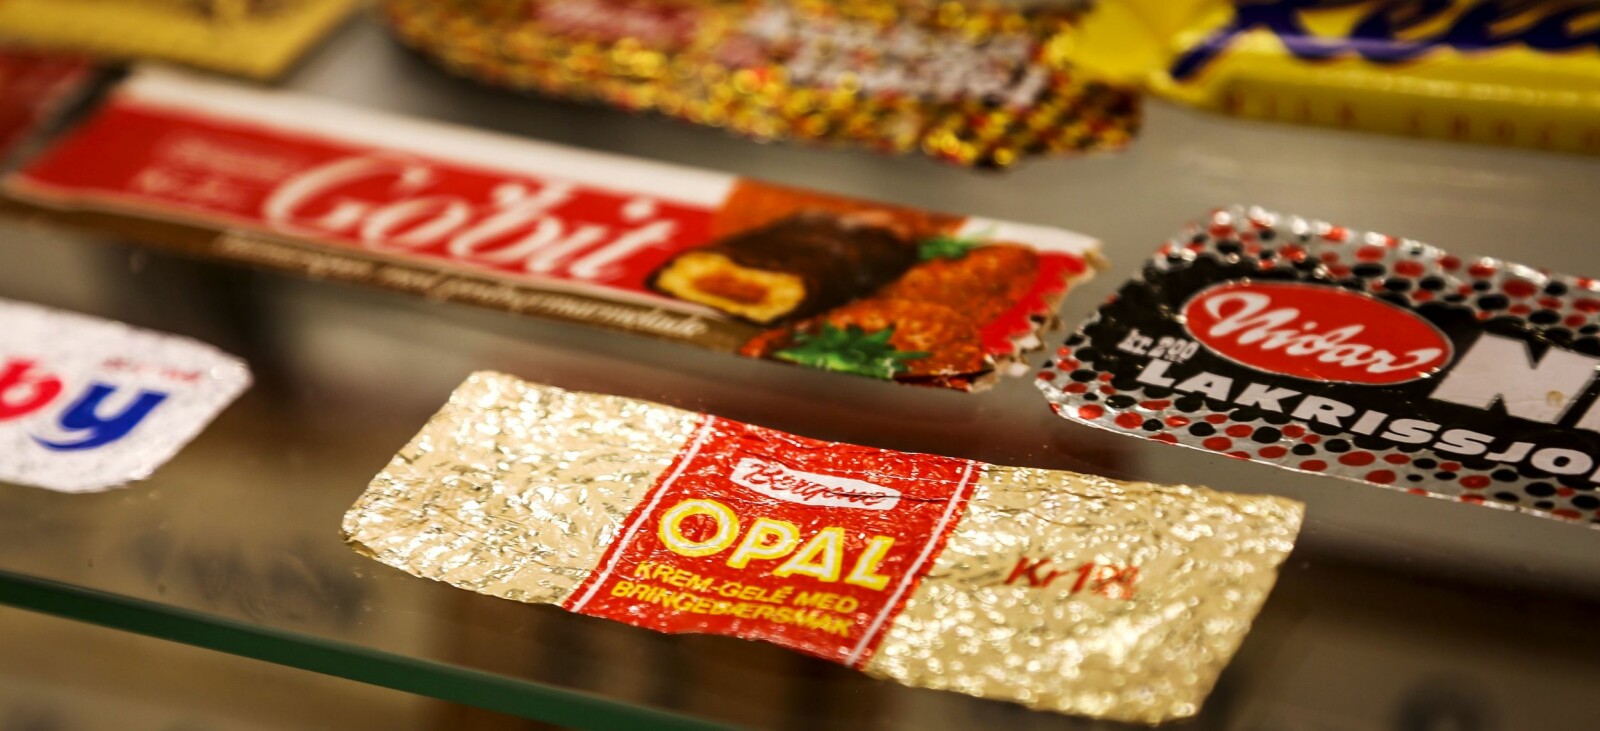 <span class=bold>SJOKO-KIRKEGÅRD</span> Noen av de gamle Nidar-merkene. Den utgåtte Opal-sjokoladen er blant dem fabrikken får flest ønsker om å relansere.